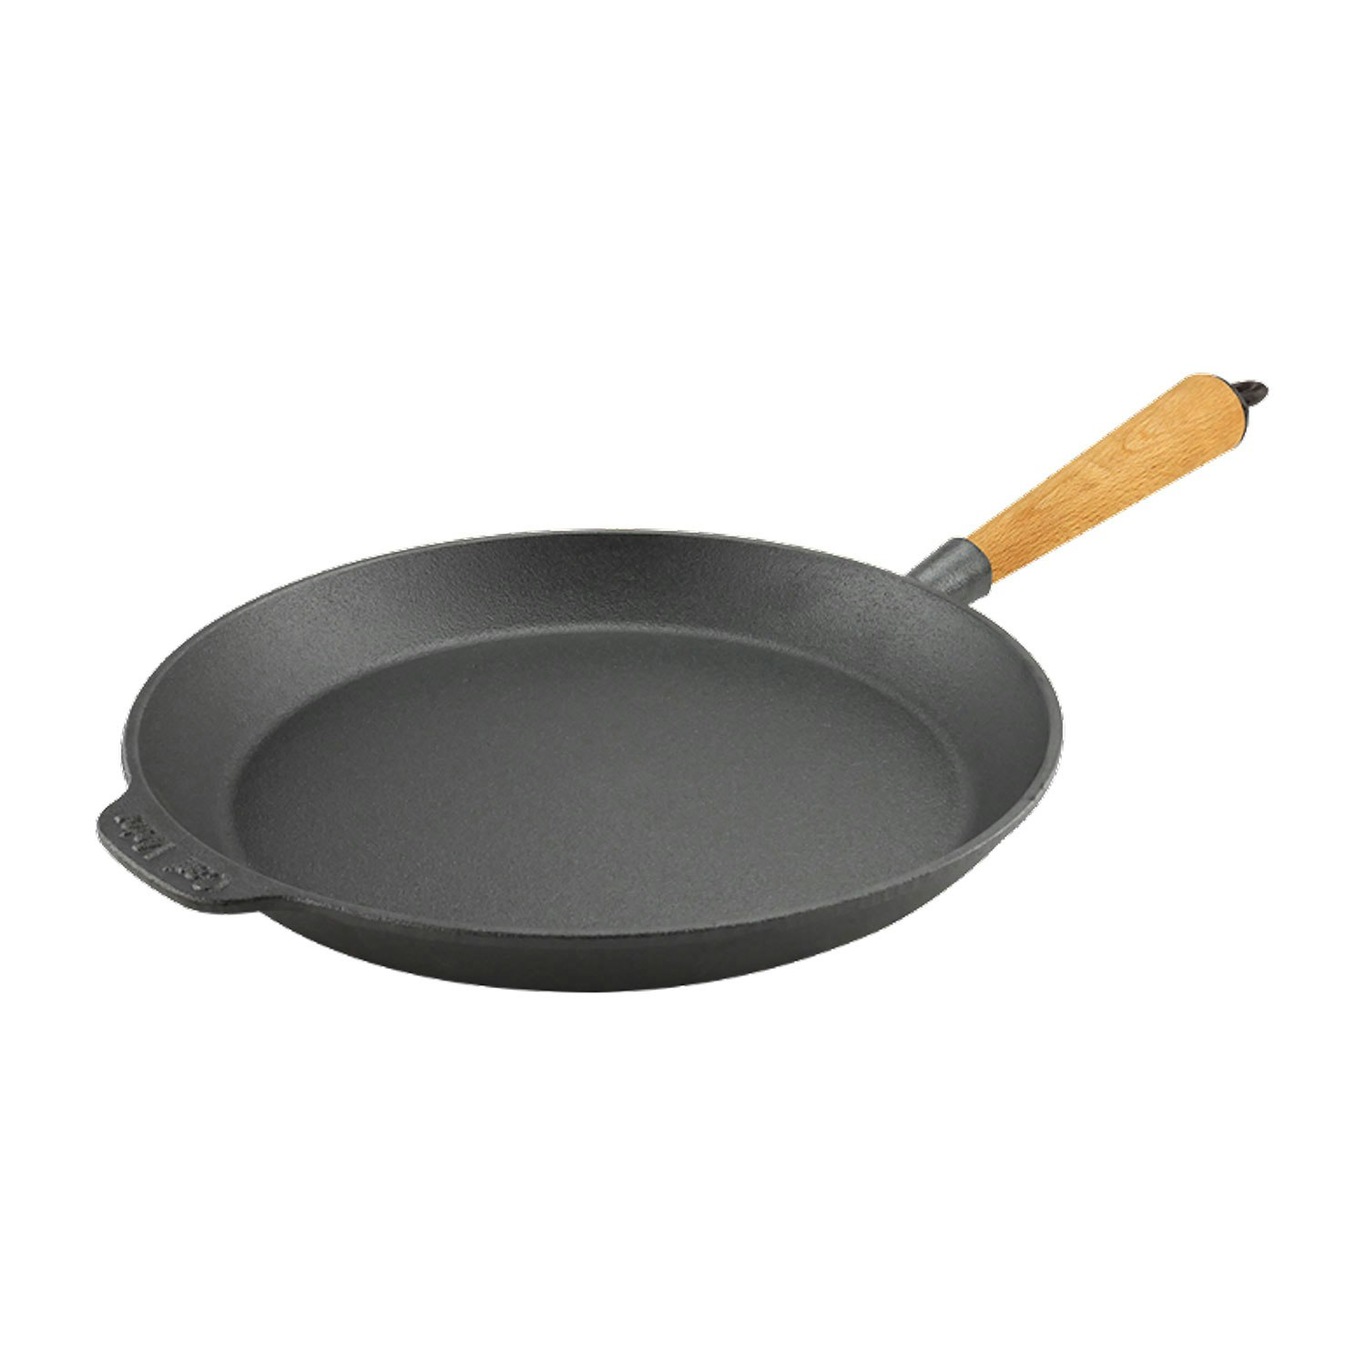 Frying Pan 28 cm With Handle In Beech